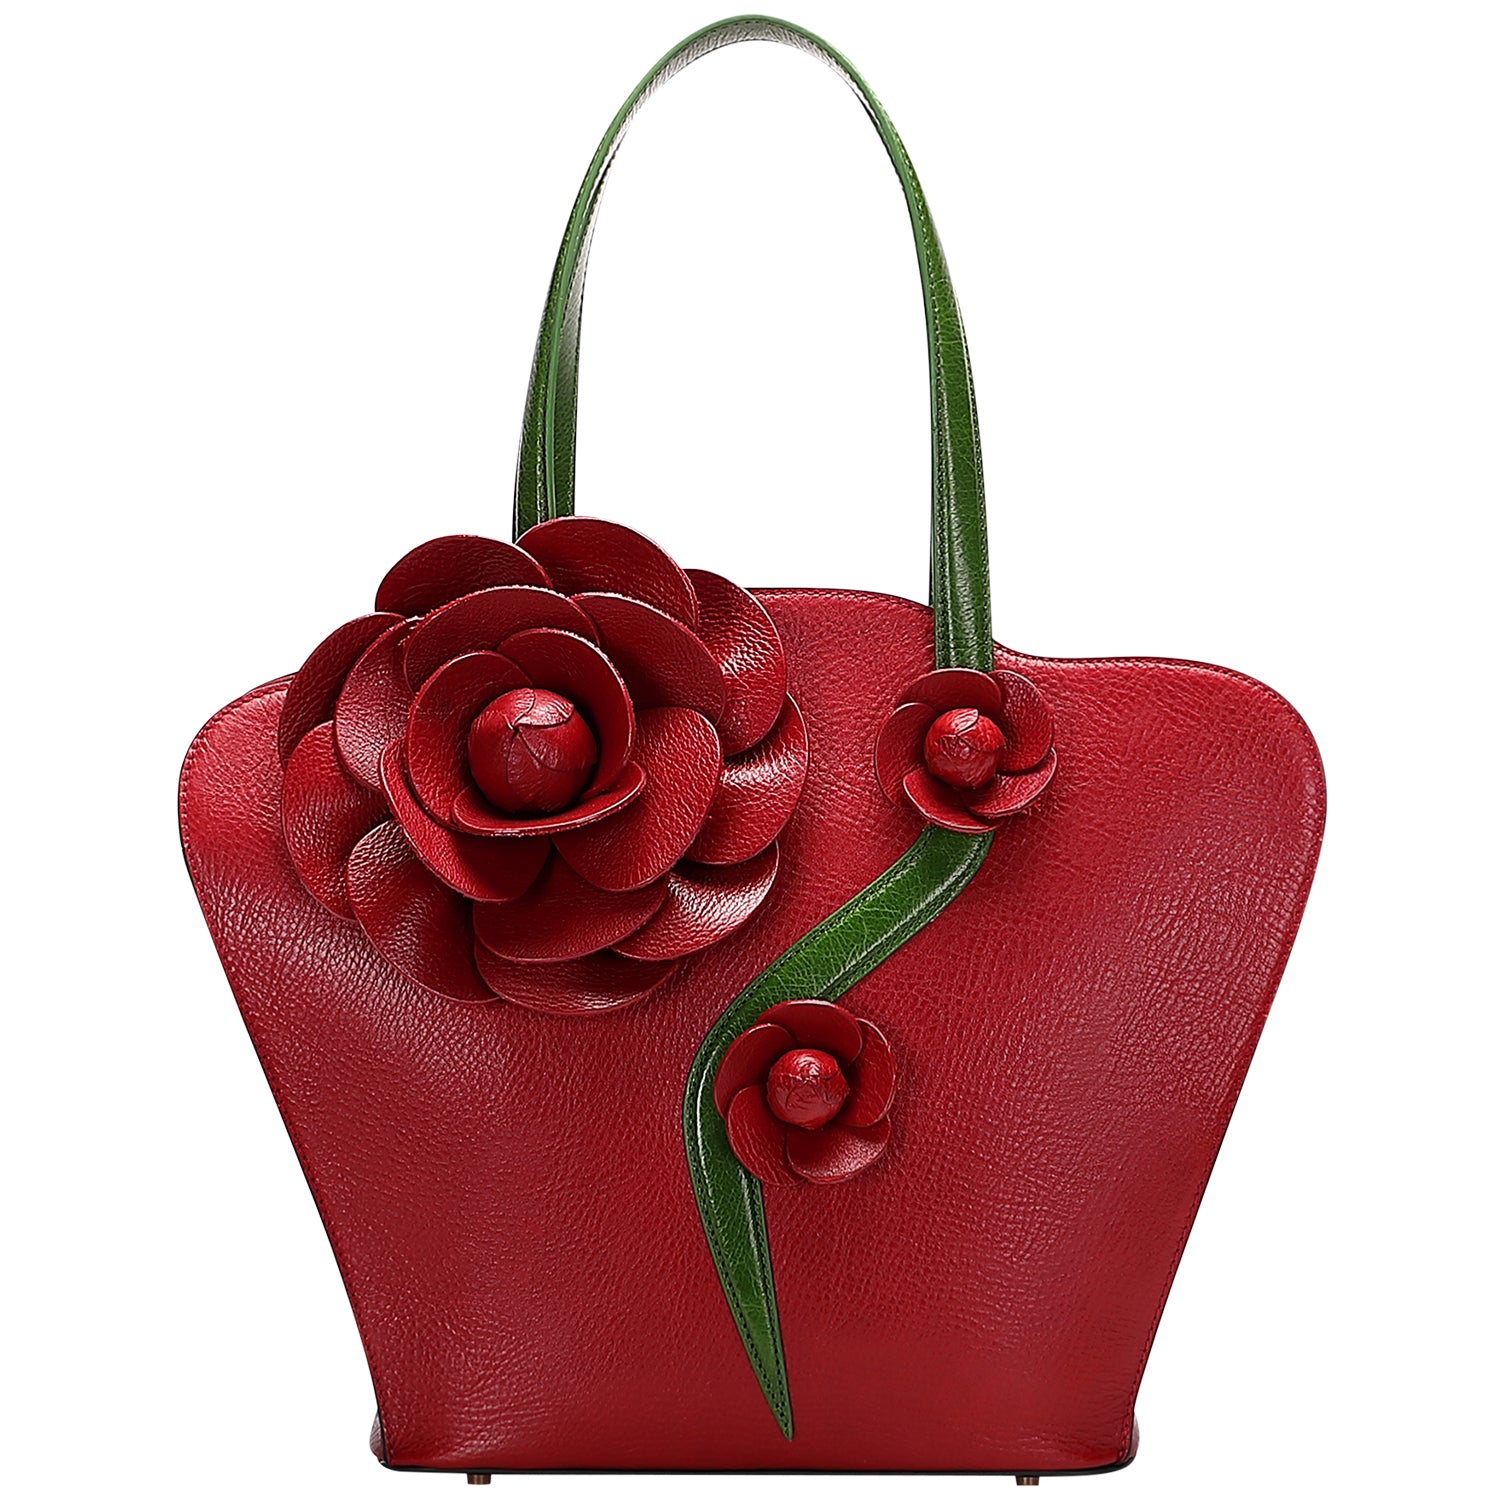 Designer Shoulder Bag Floral Top Handle Satchel Handbags For Women ...